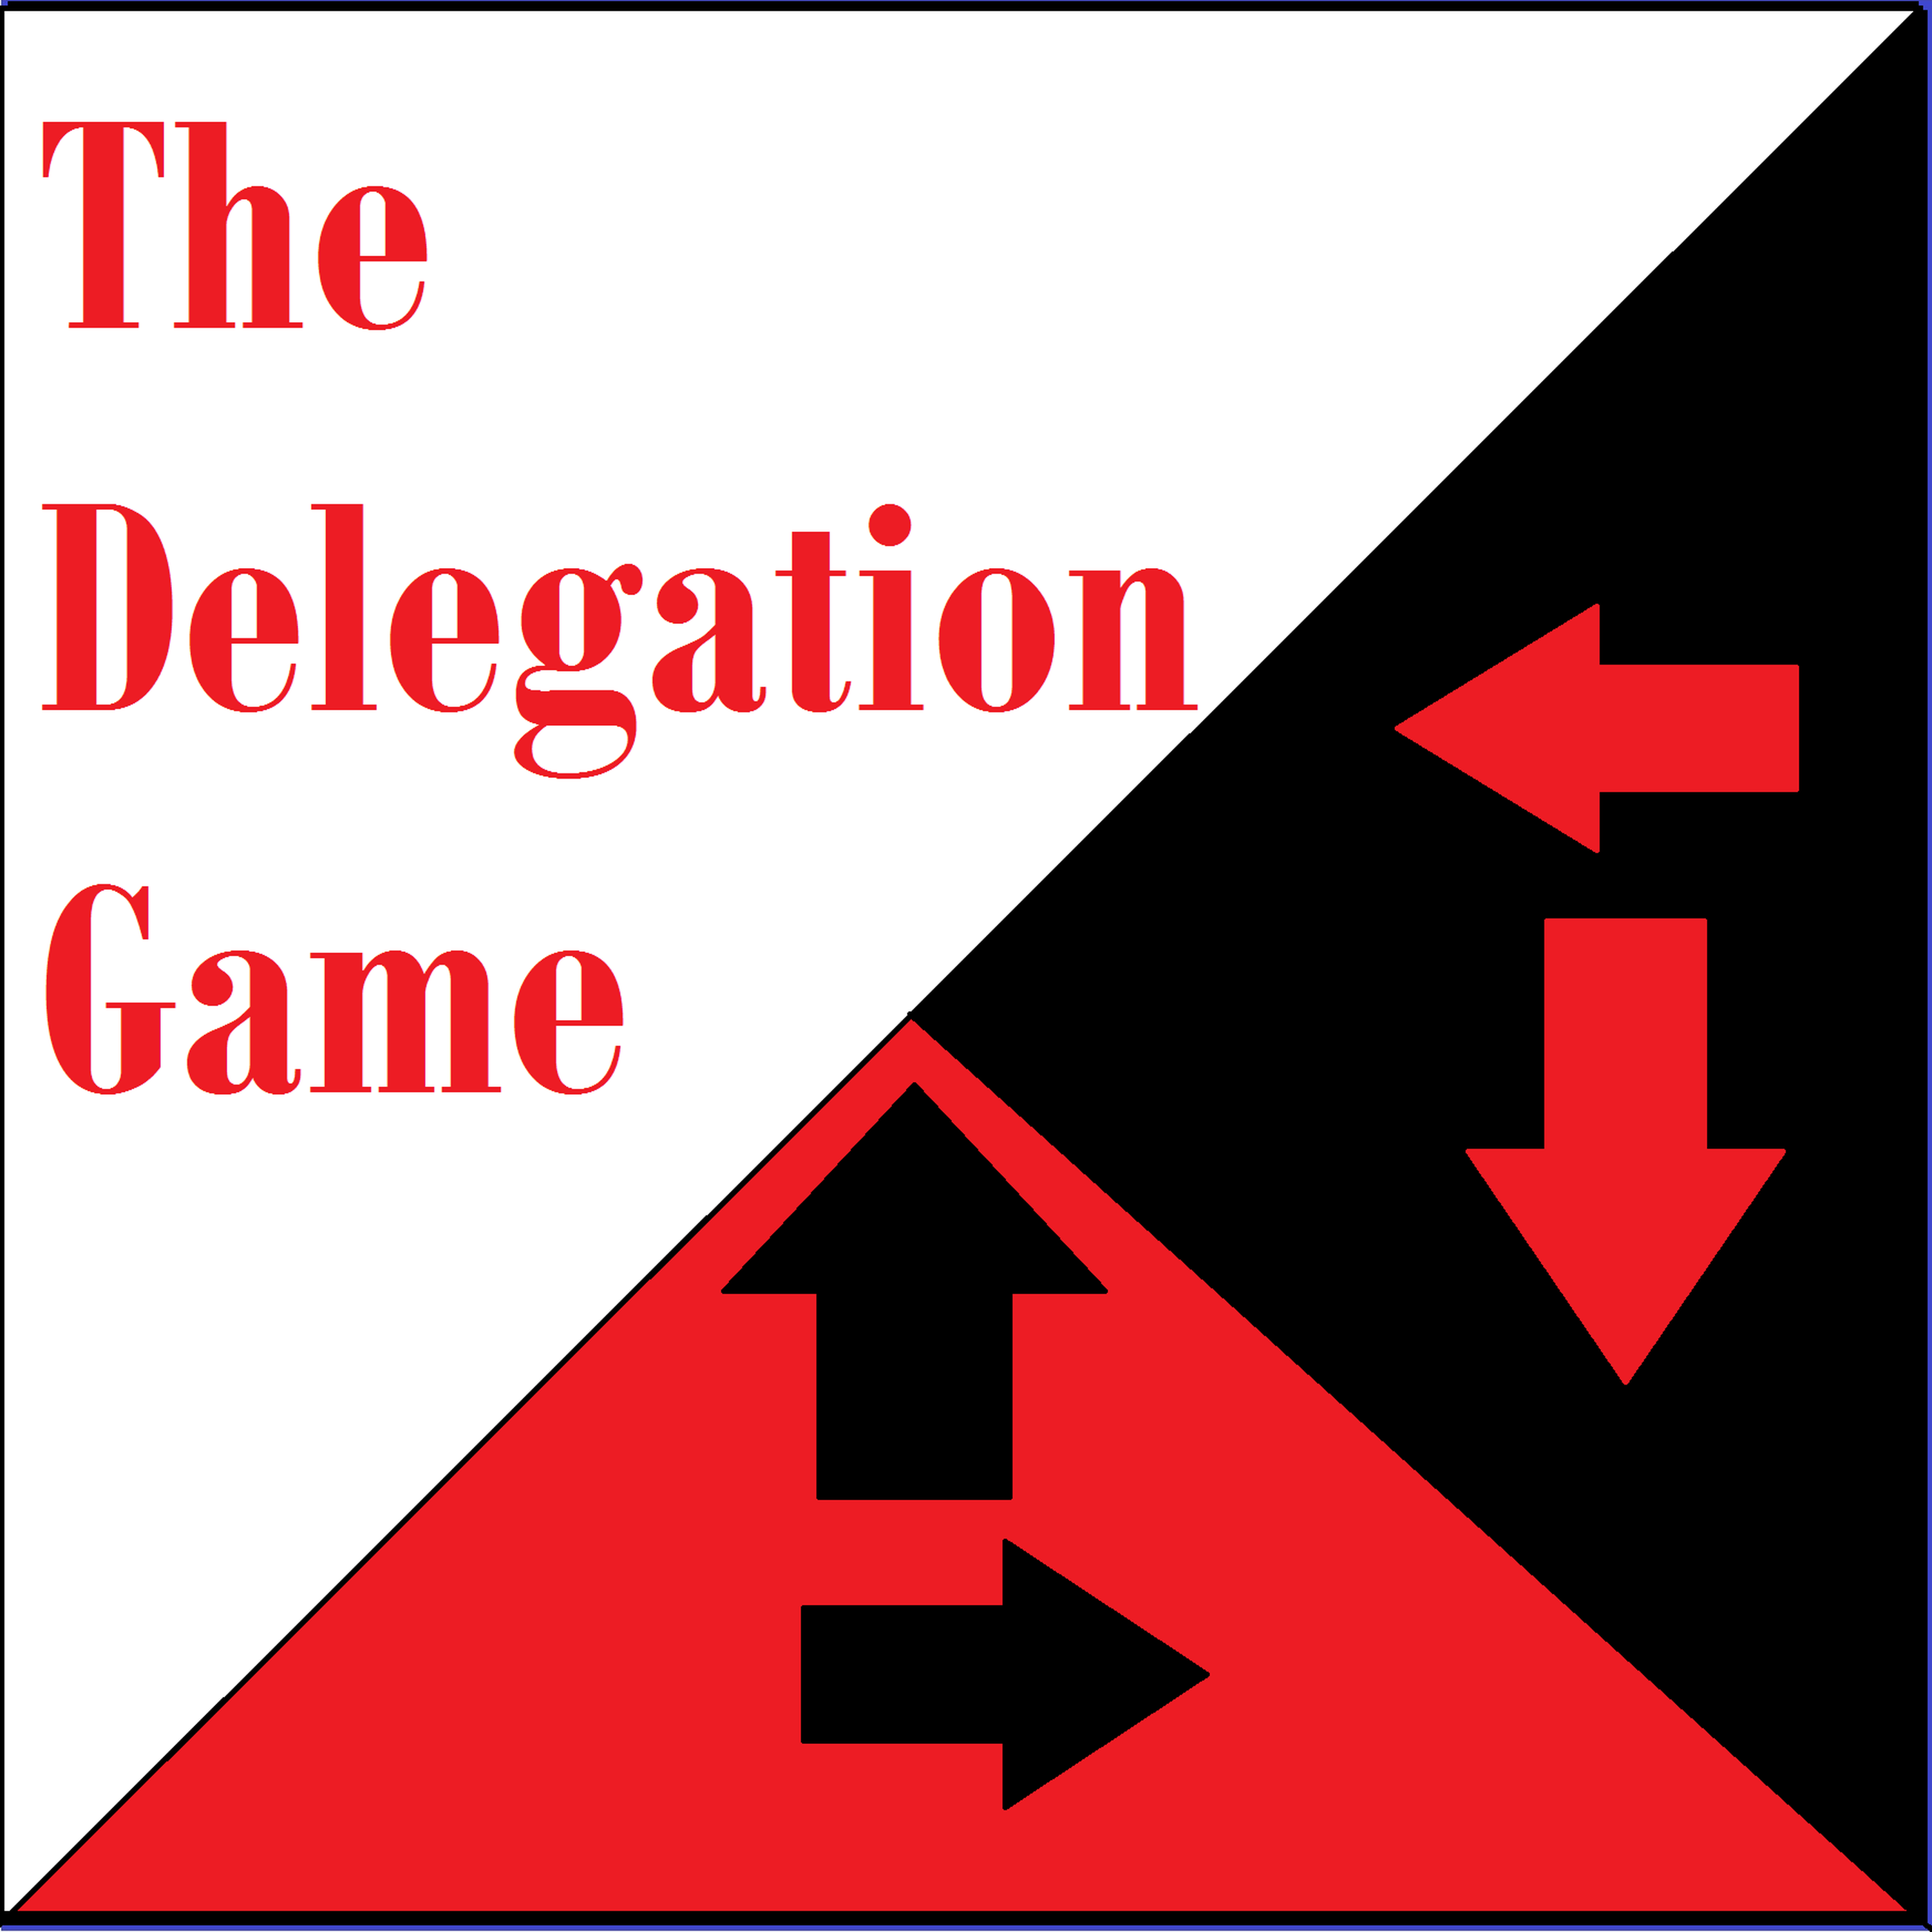 Delegation Game: The End